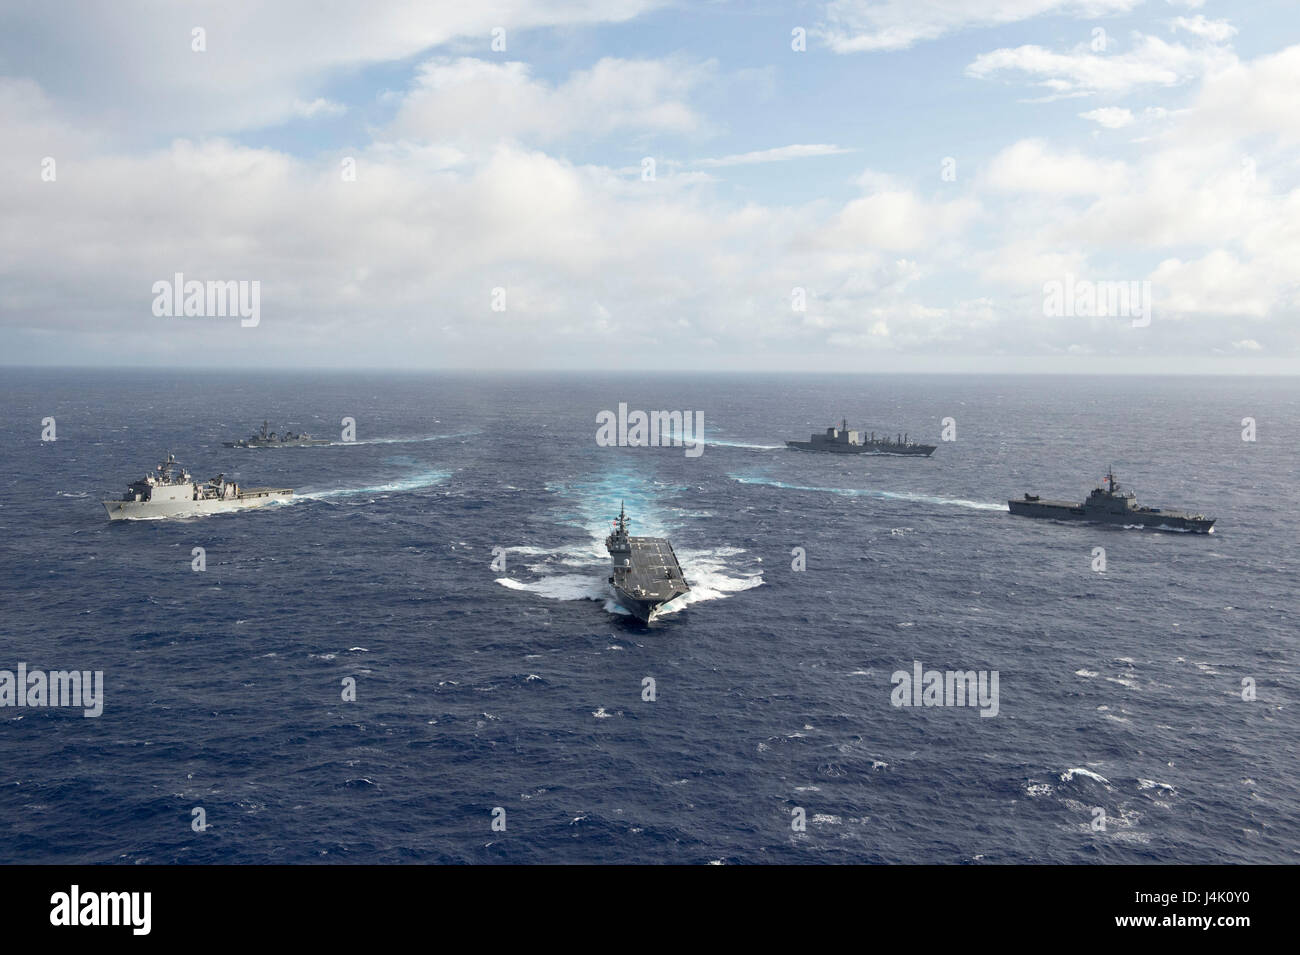 161106-N-ZK021-255 OCÉANO PACÍFICO (Nov. 6, 2016) - Los buques que participan en gran espada 2017 en la formación de vapor durante un ejercicio fotográfico. Gran Espada 17 es un entrenamiento de campo conjuntas y bilaterales ejercicio (FTX) entre EE.UU. y las fuerzas japonesas significaba para aumentar la preparación y la interoperabilidad en el marco de los EE.UU. - Japón alianza. (Ee.Uu. Foto de marina de primera clase de Suboficiales Nardel Gervasio/liberado) Foto de stock